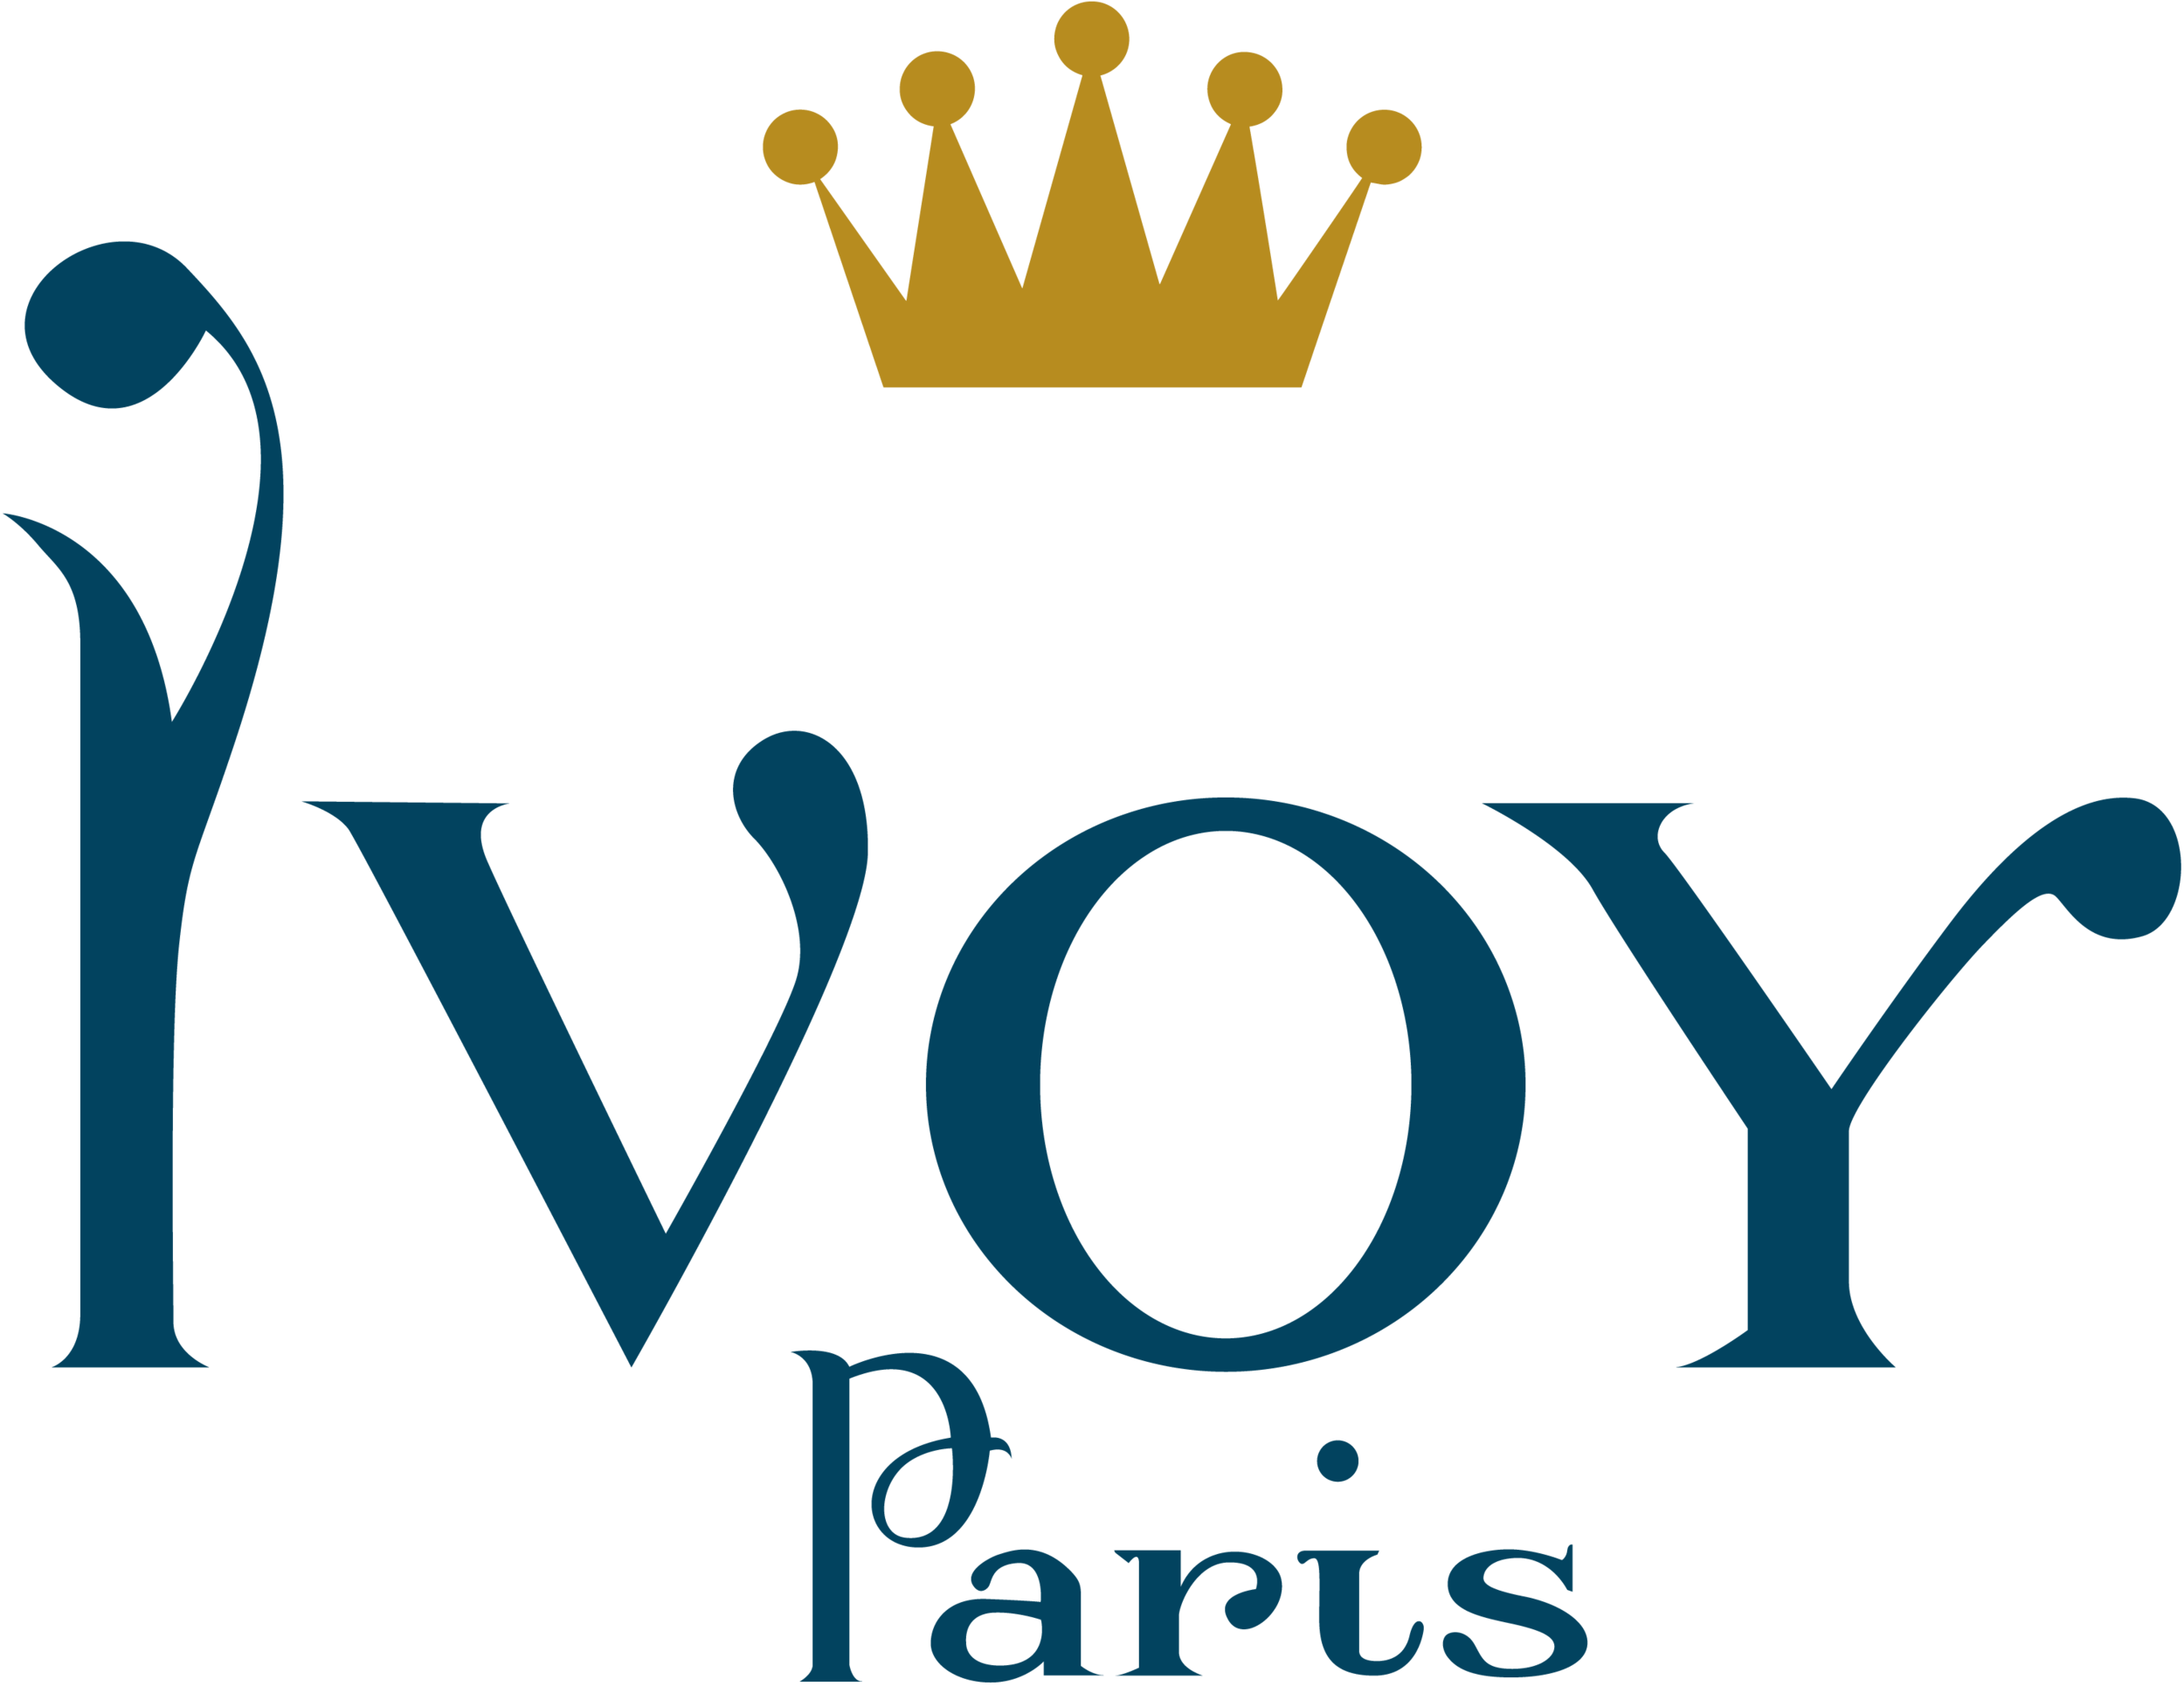 svg_logo-ivoy.png